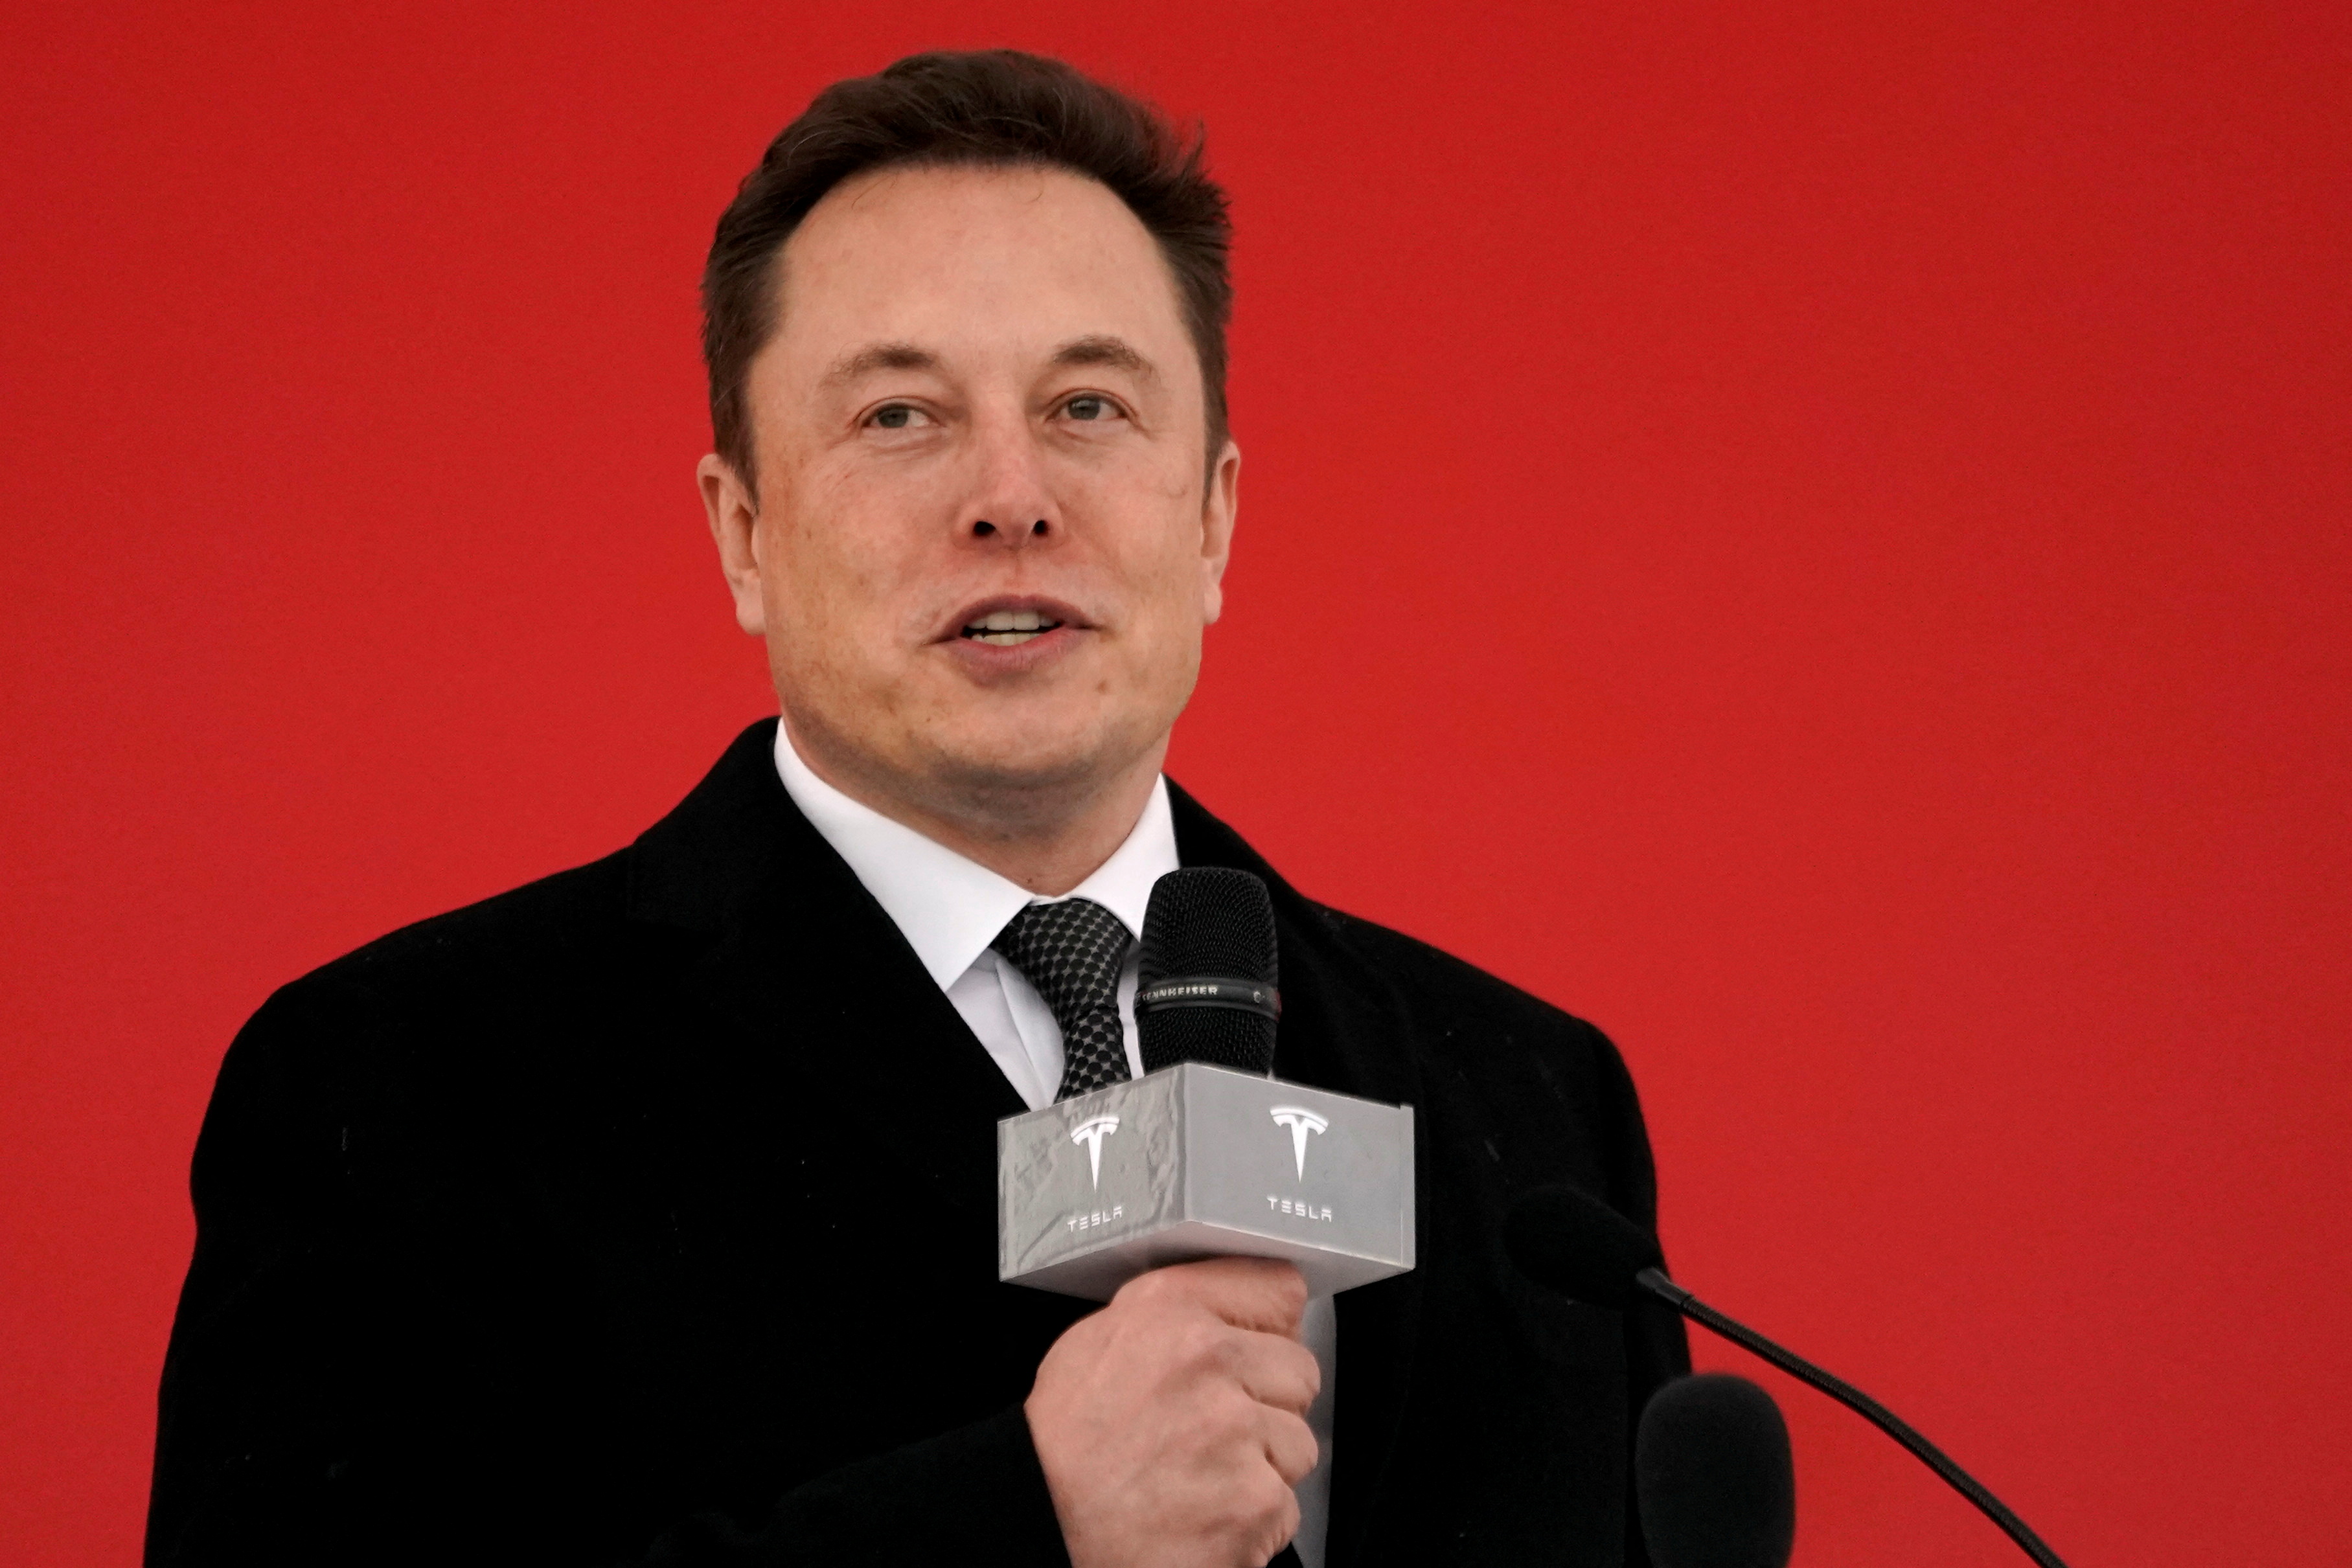 Elon Musk ha criticado las normas de Twitter (Foto: REUTERS/Aly Song/File Photo)